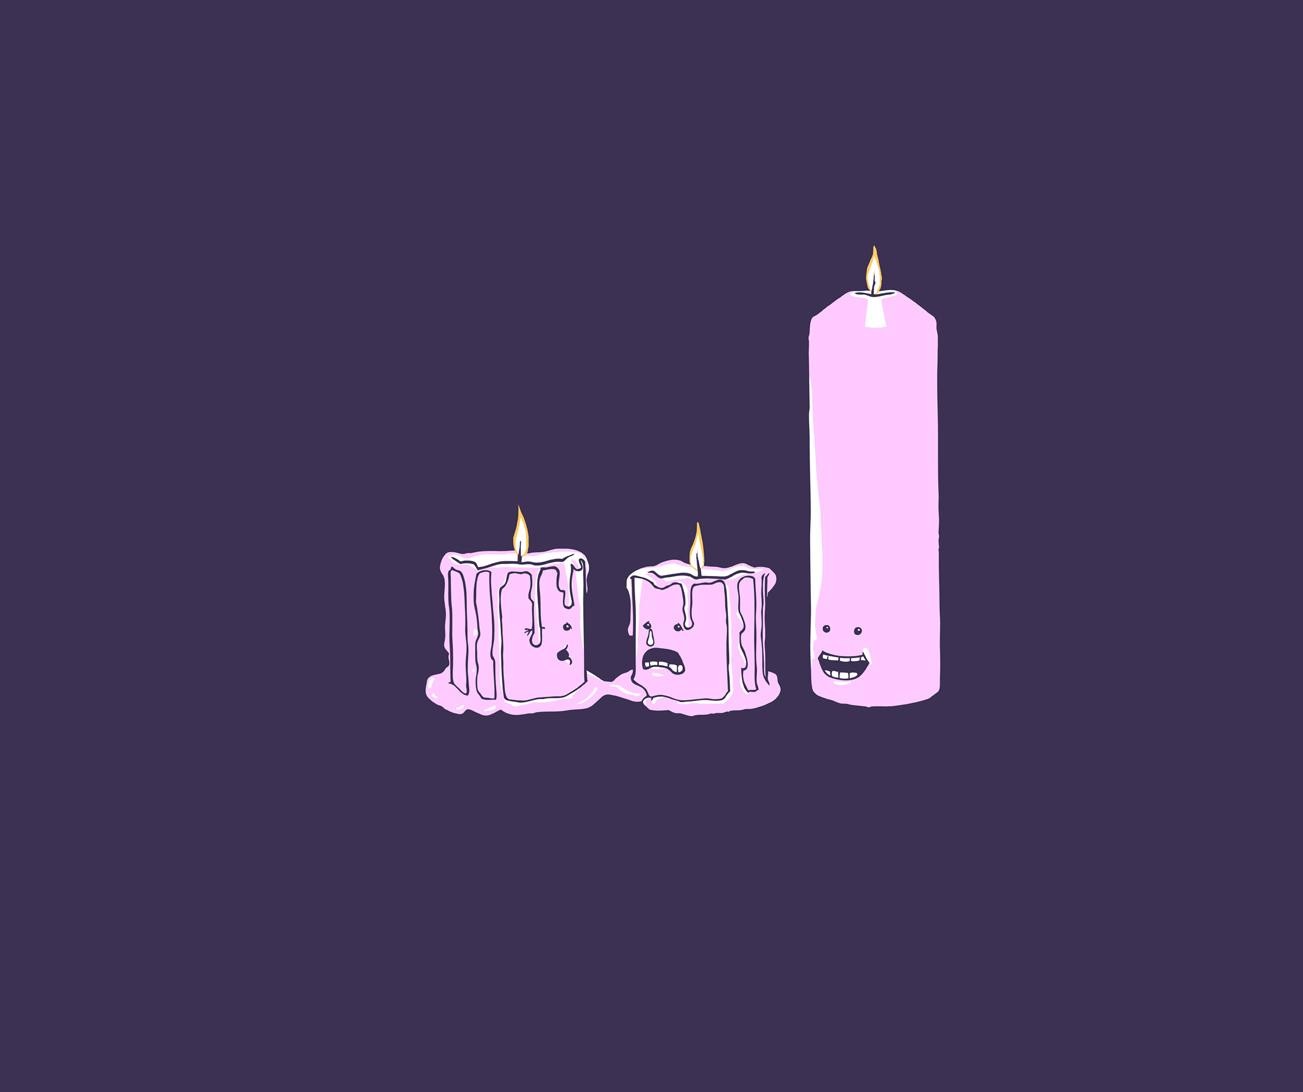 Candles Melting Purple Background Minimalism 1303x1092